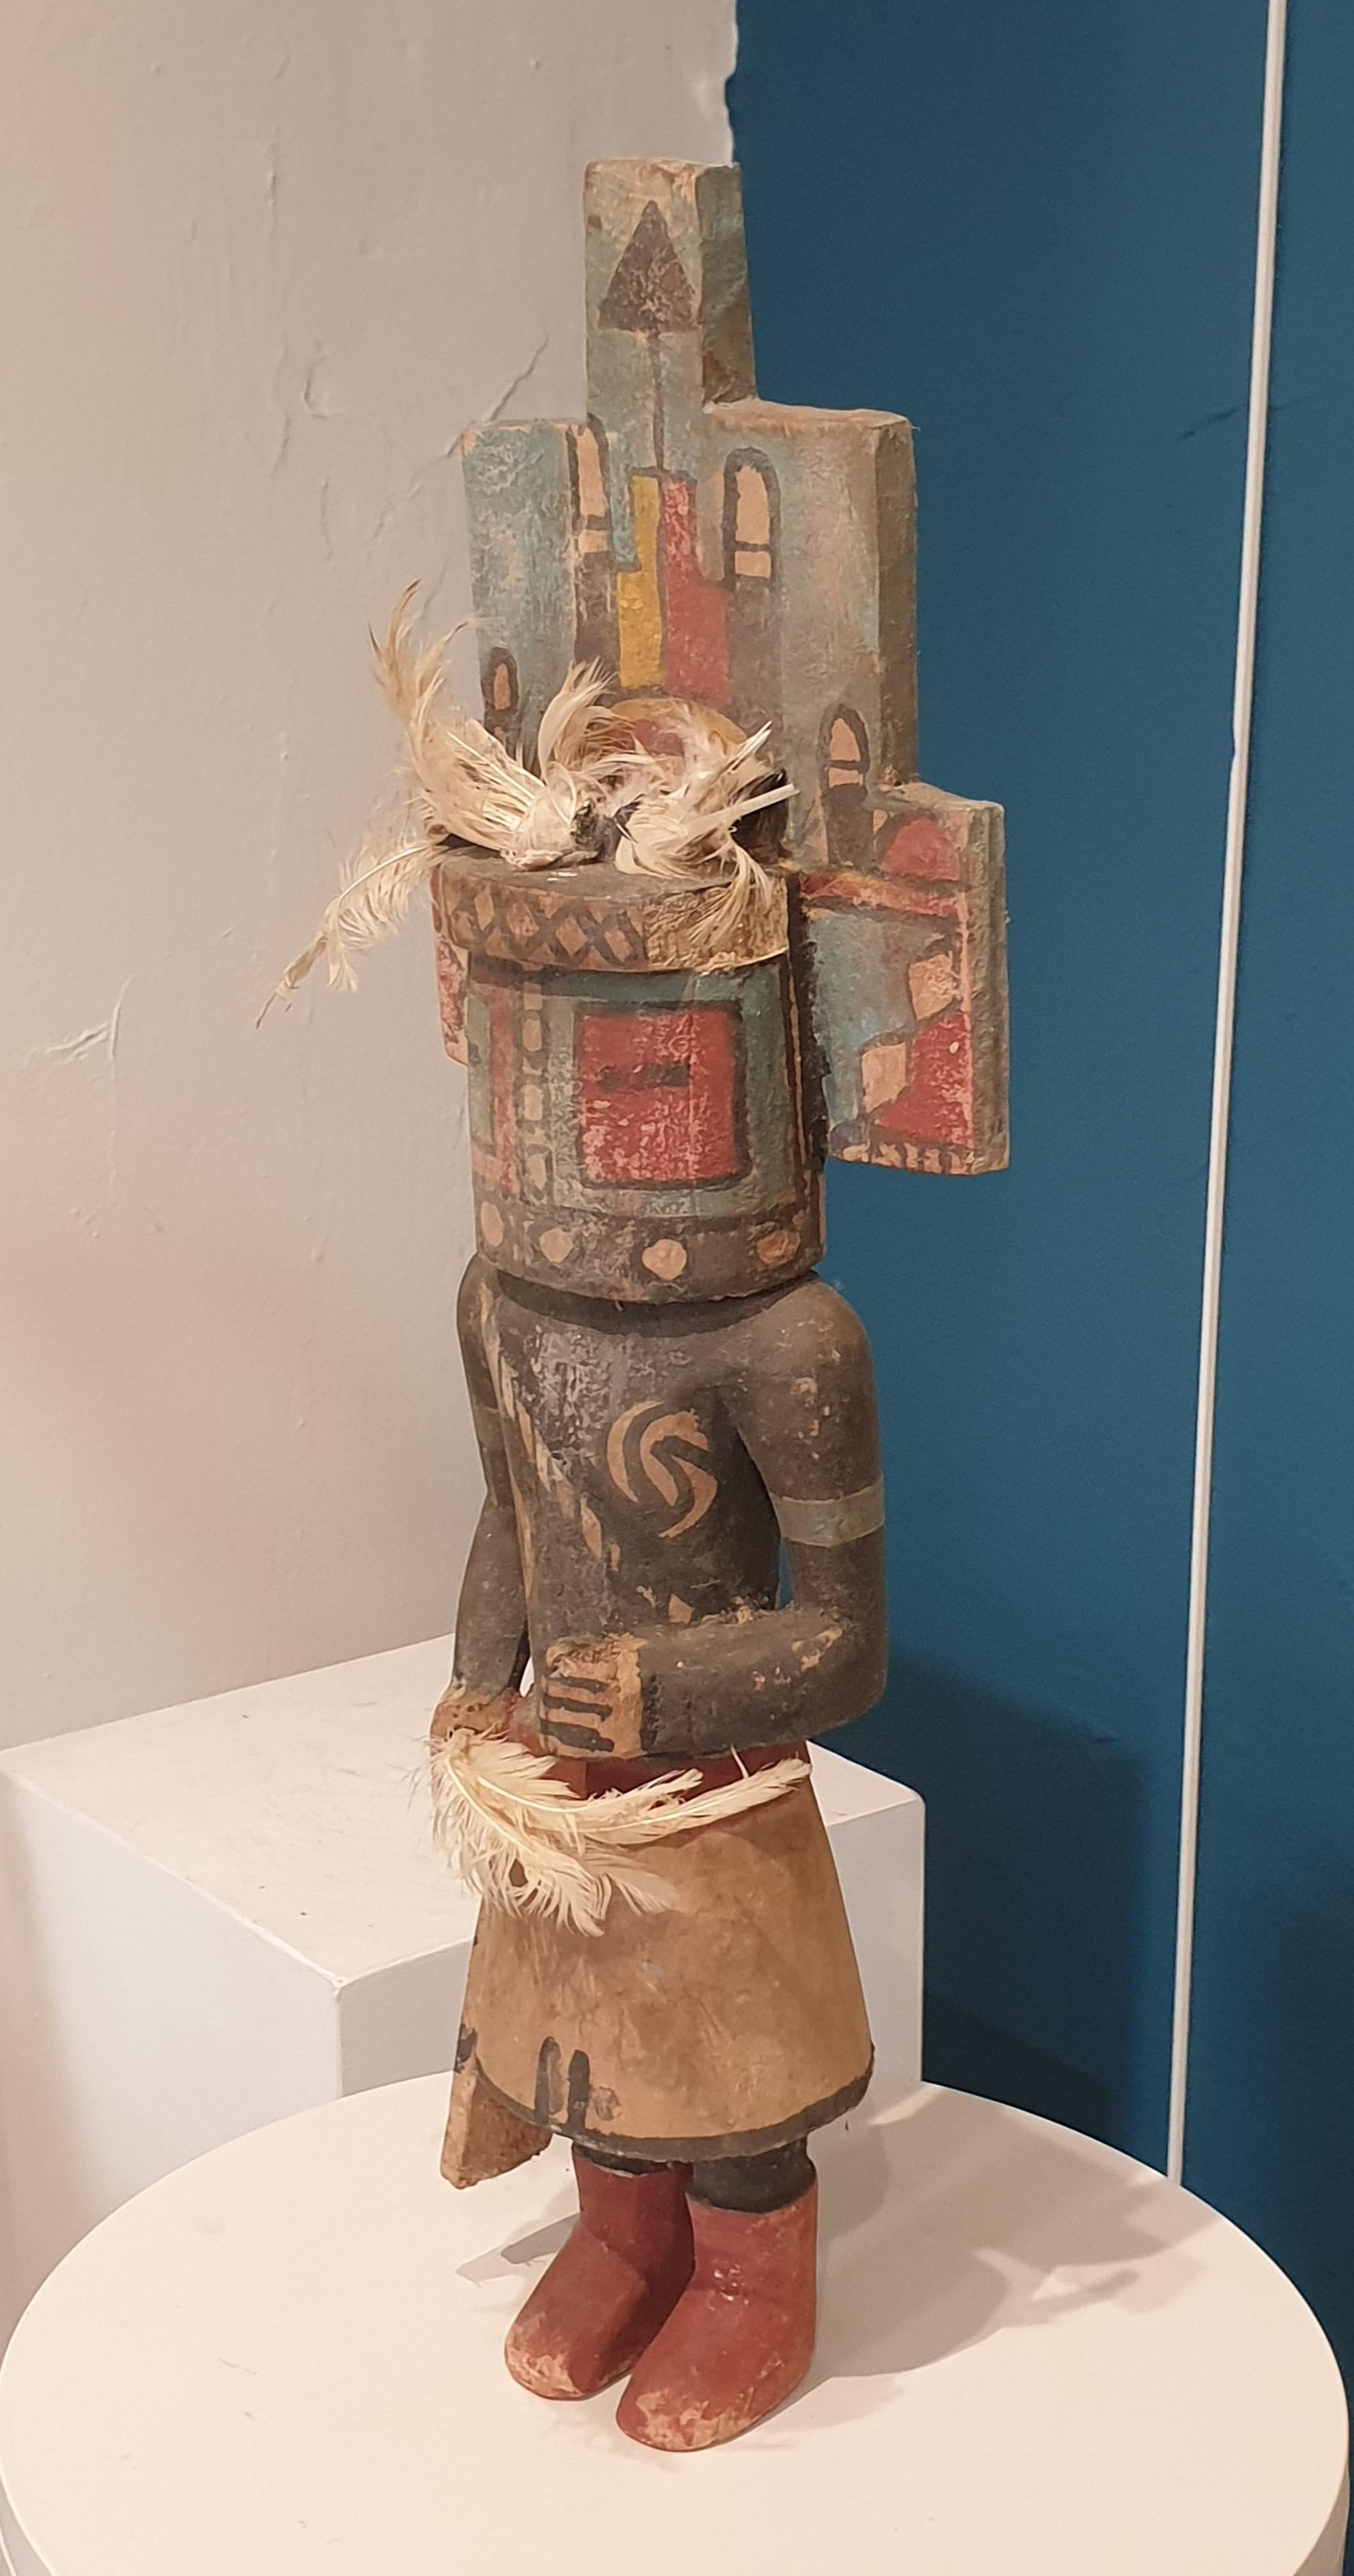 Hopi Katsina (Kachina) Puppe der Nordamerikaner. – Sculpture von Hopi Craftsmen